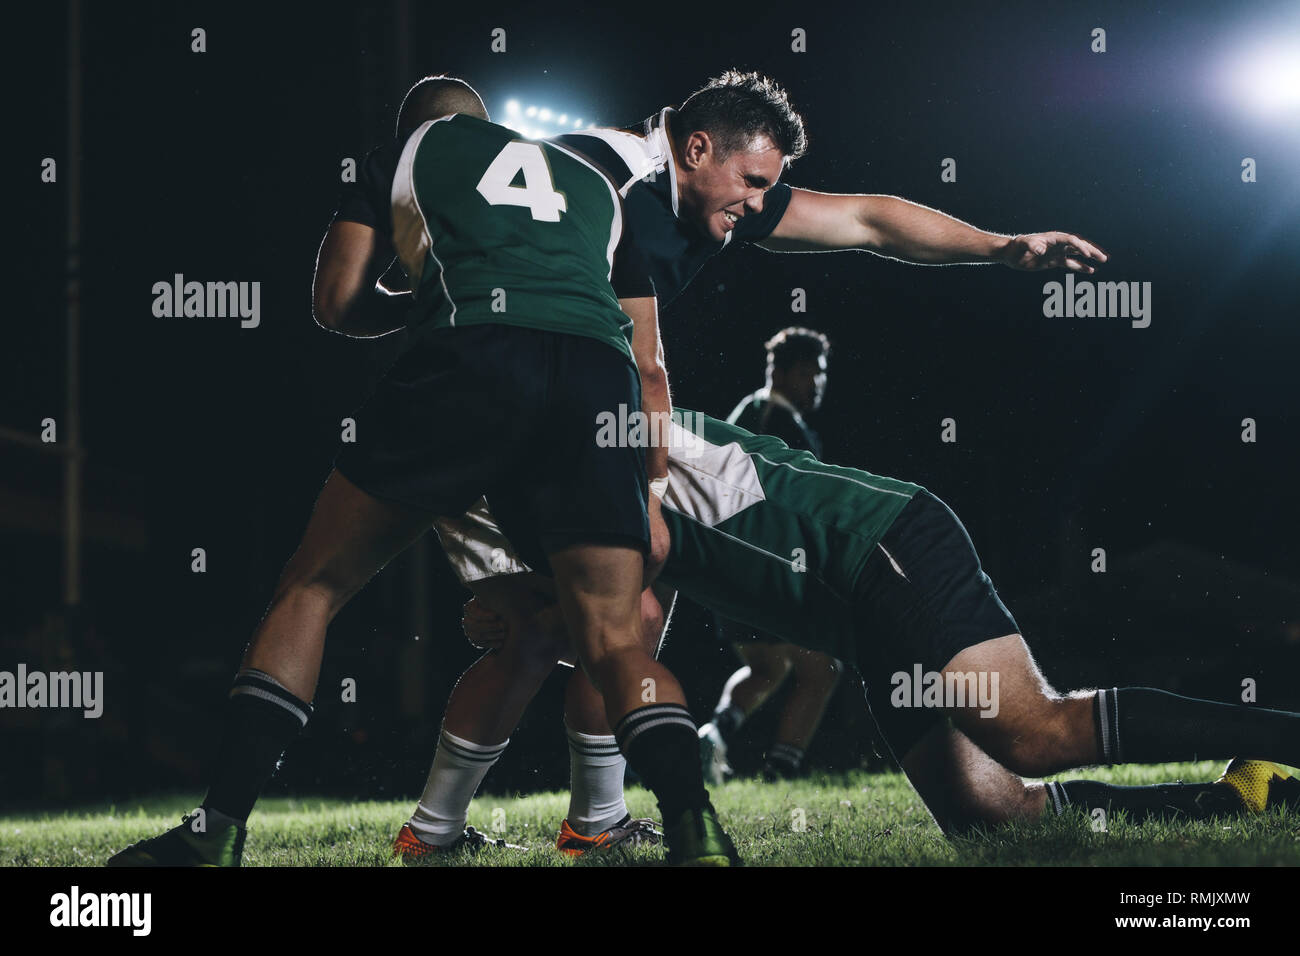 Giocatori di Rugby facendo uno sforzo per ottenere la palla da avversario del team player. Giocatori di rugby in competizione in corrispondenza sotto le luci. Foto Stock